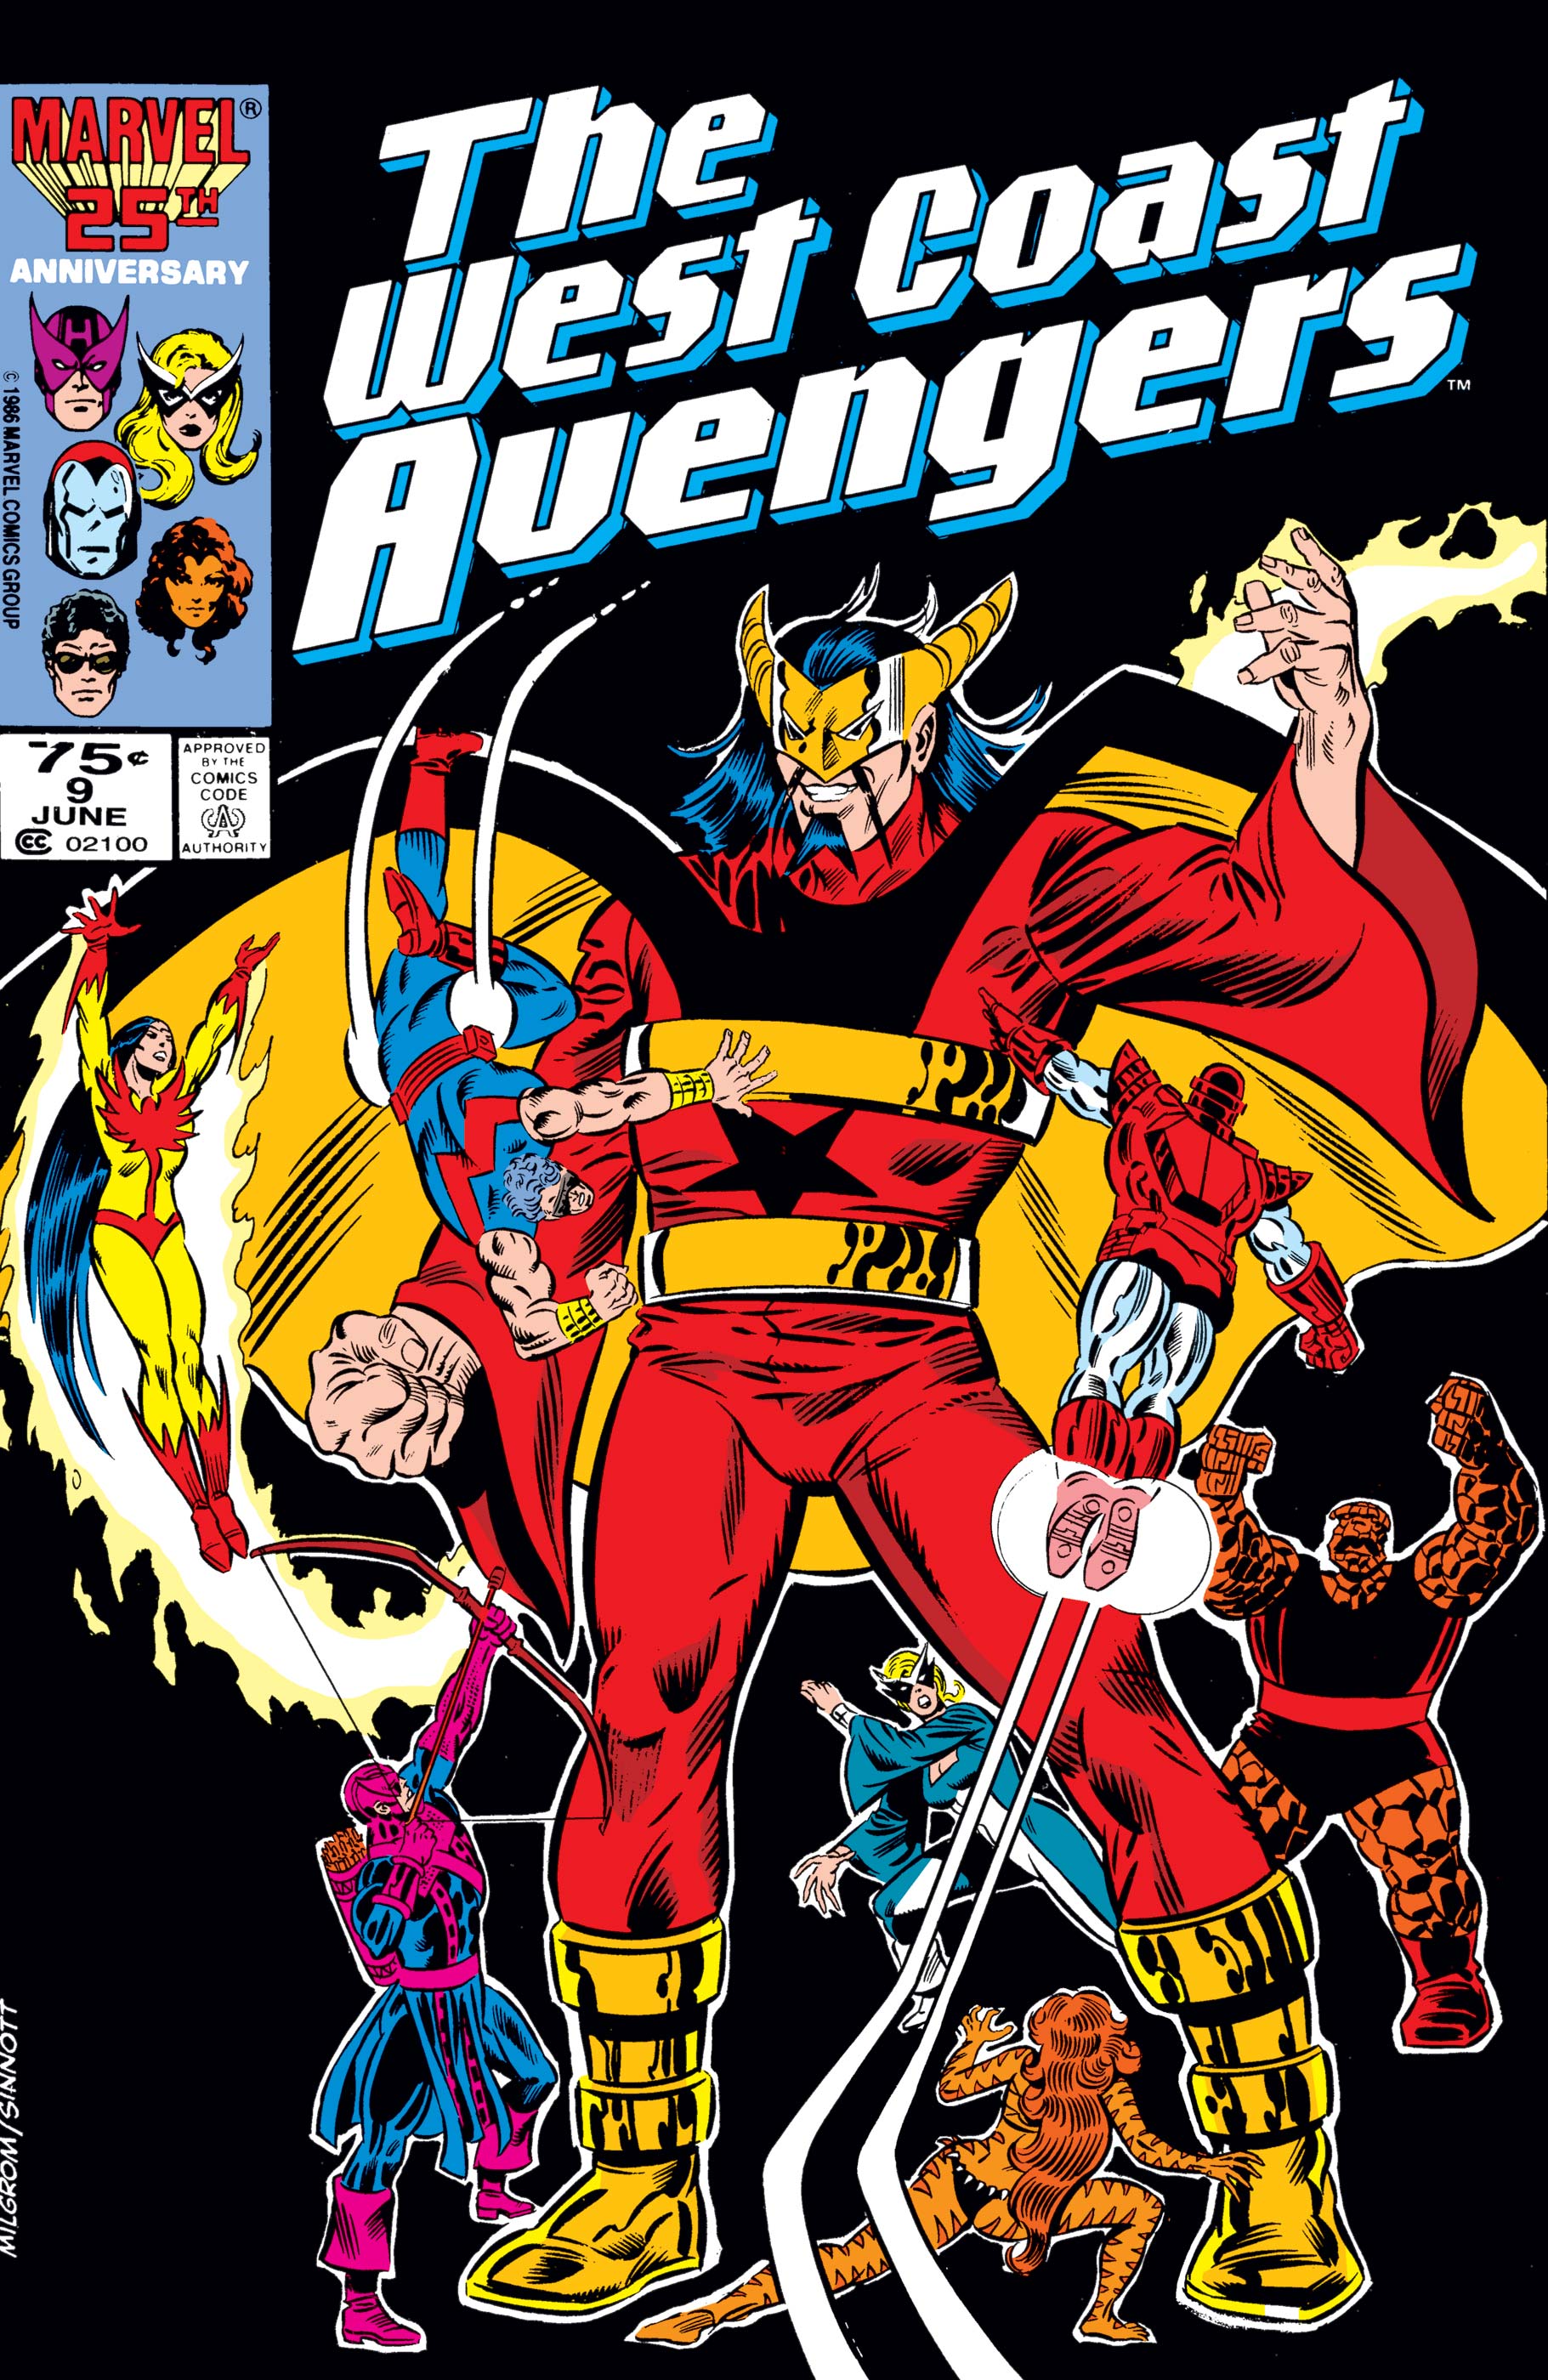 West Coast Avengers (1985) #9